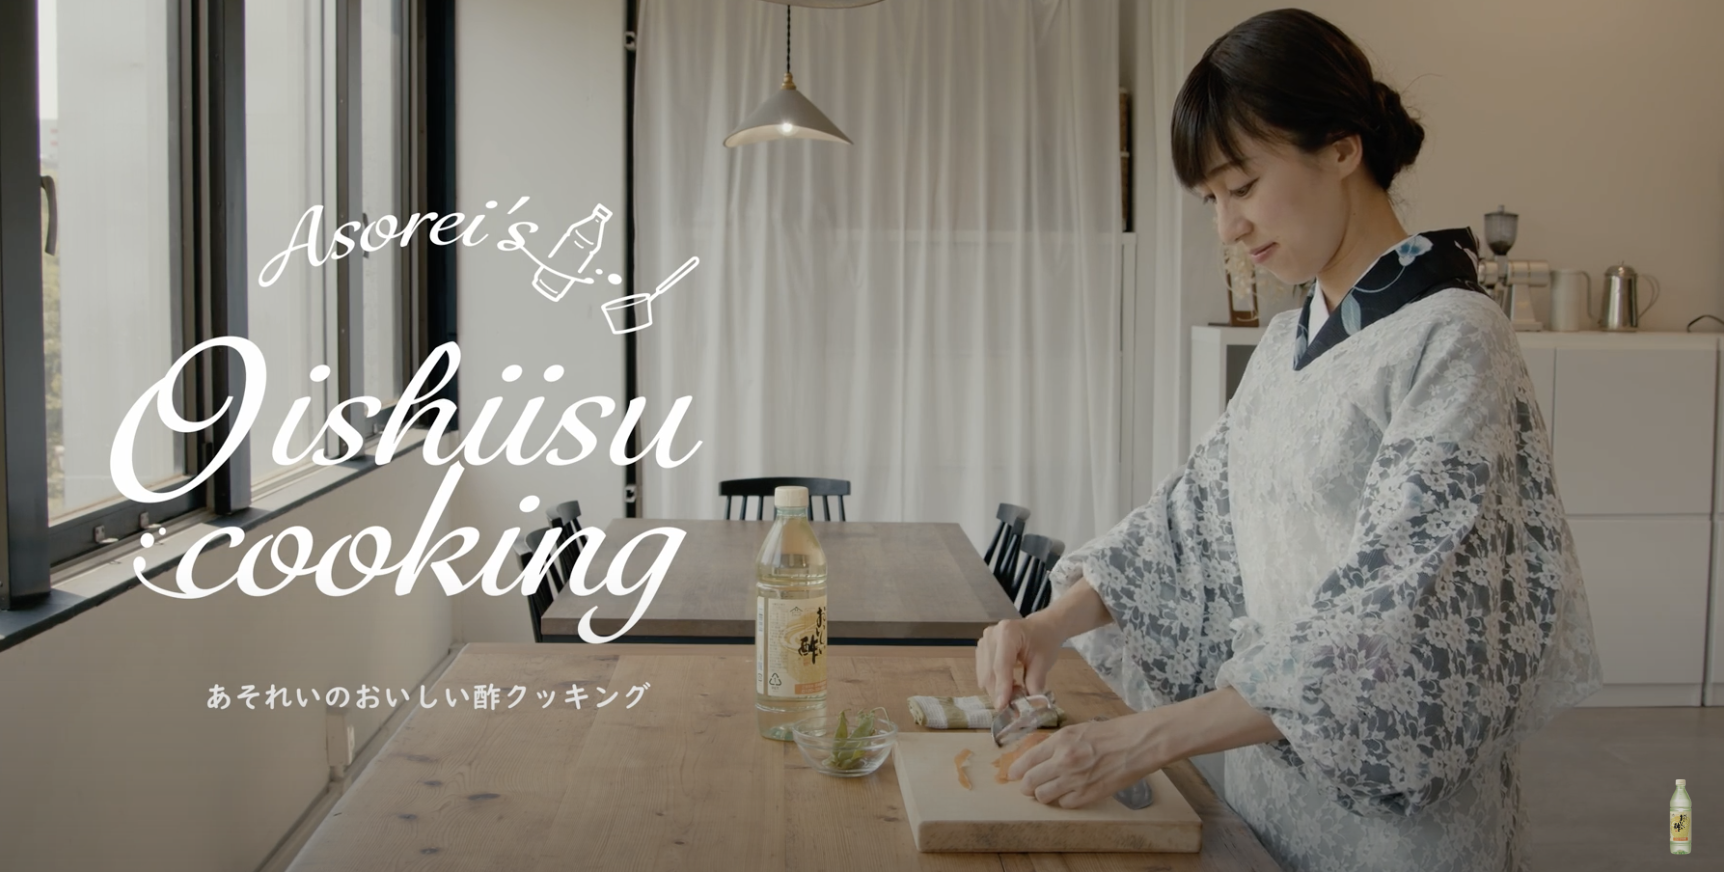 YouTube「あそれいのおいしい酢クッキング」-にんじんのきんぴら-の作り方